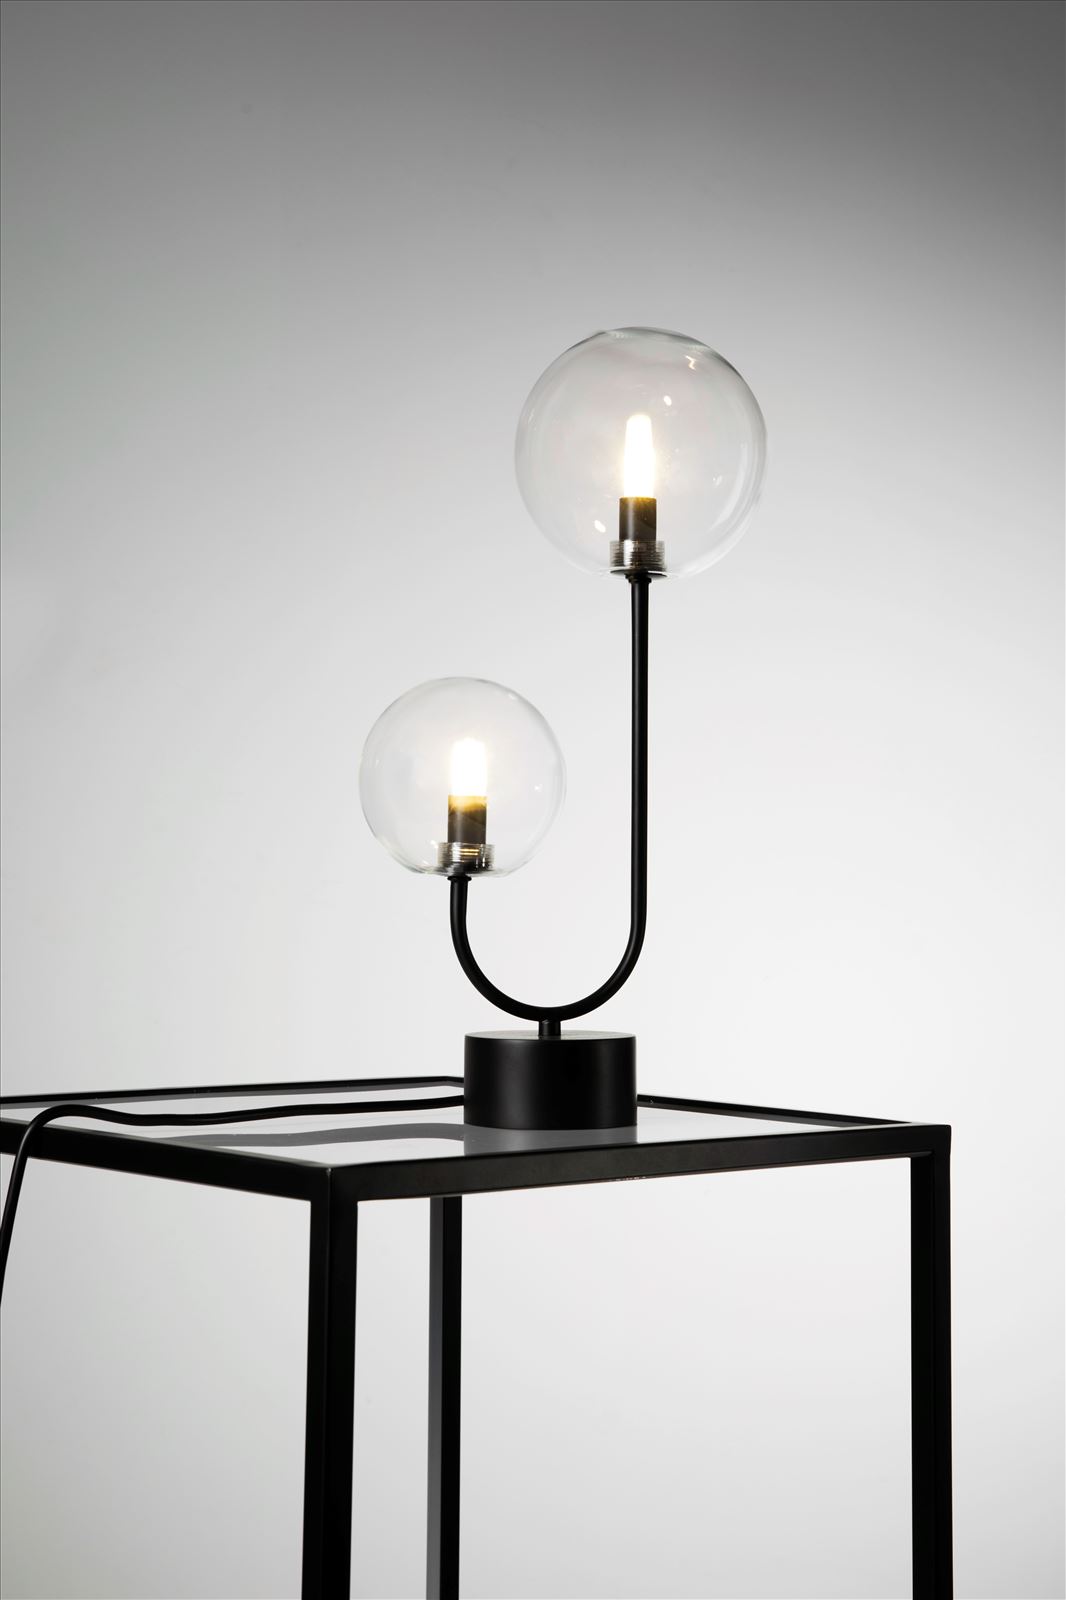 גופי תאורה בקטגוריית: מנורות שולחן  ,שם המוצר: פריז